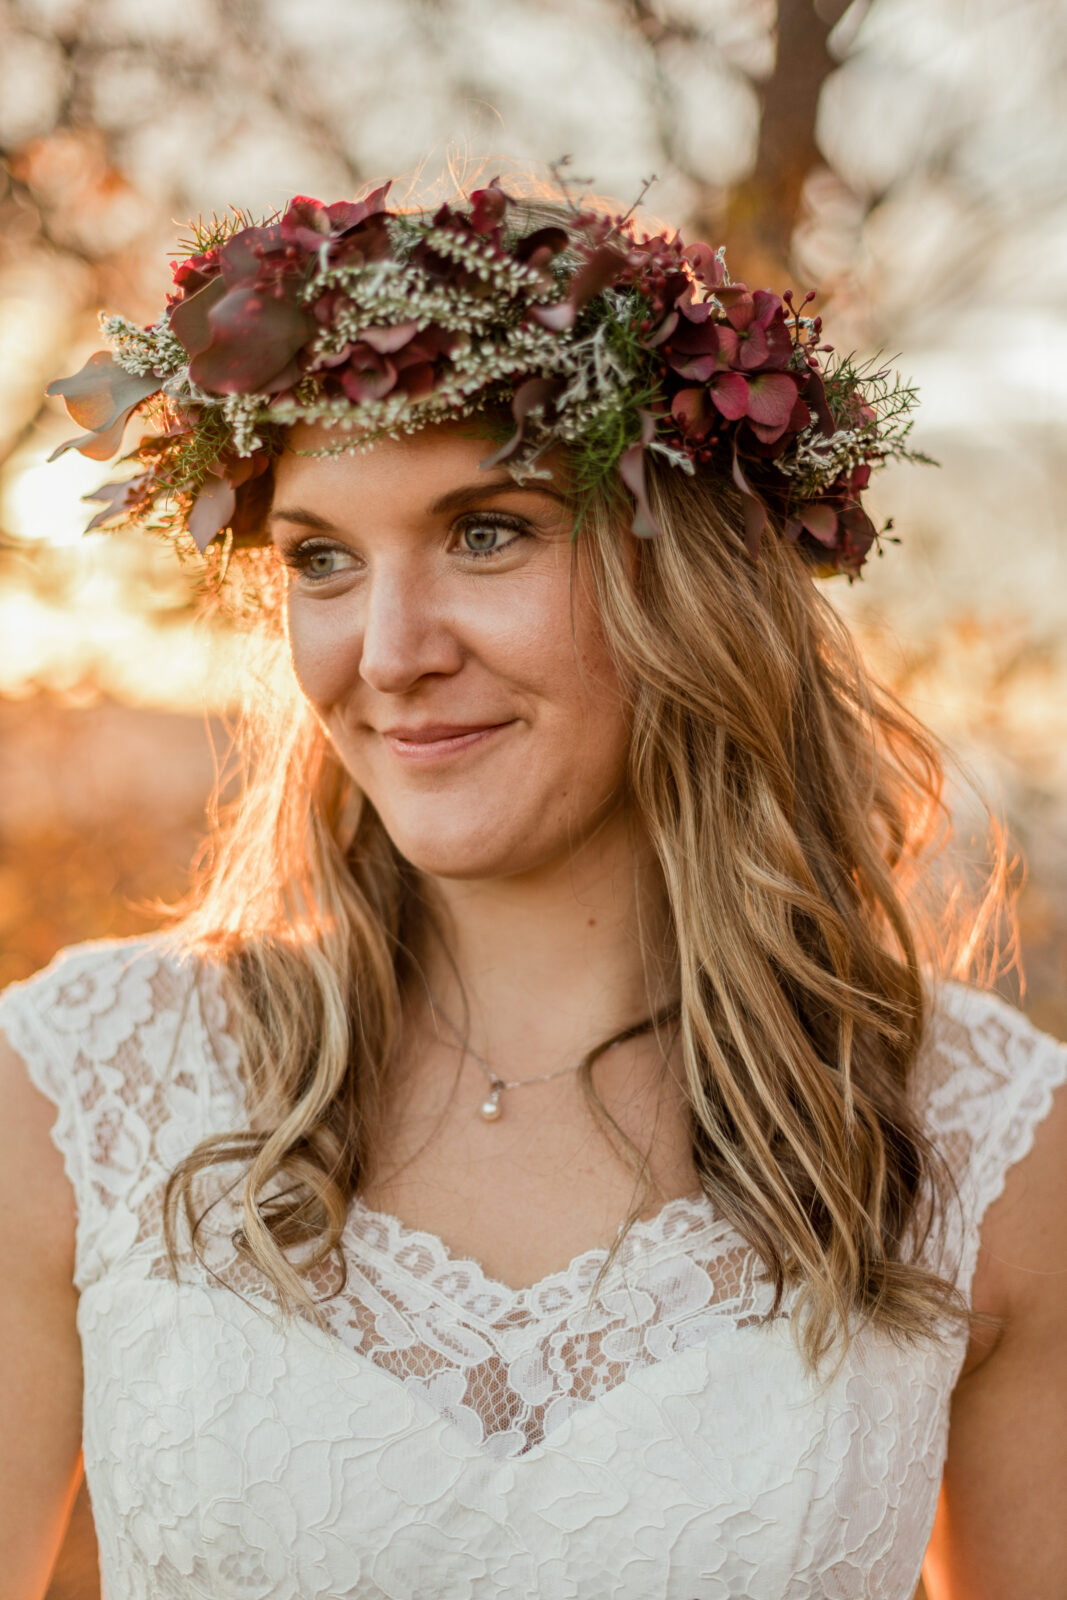 Blumenkranz im Haar der Braut